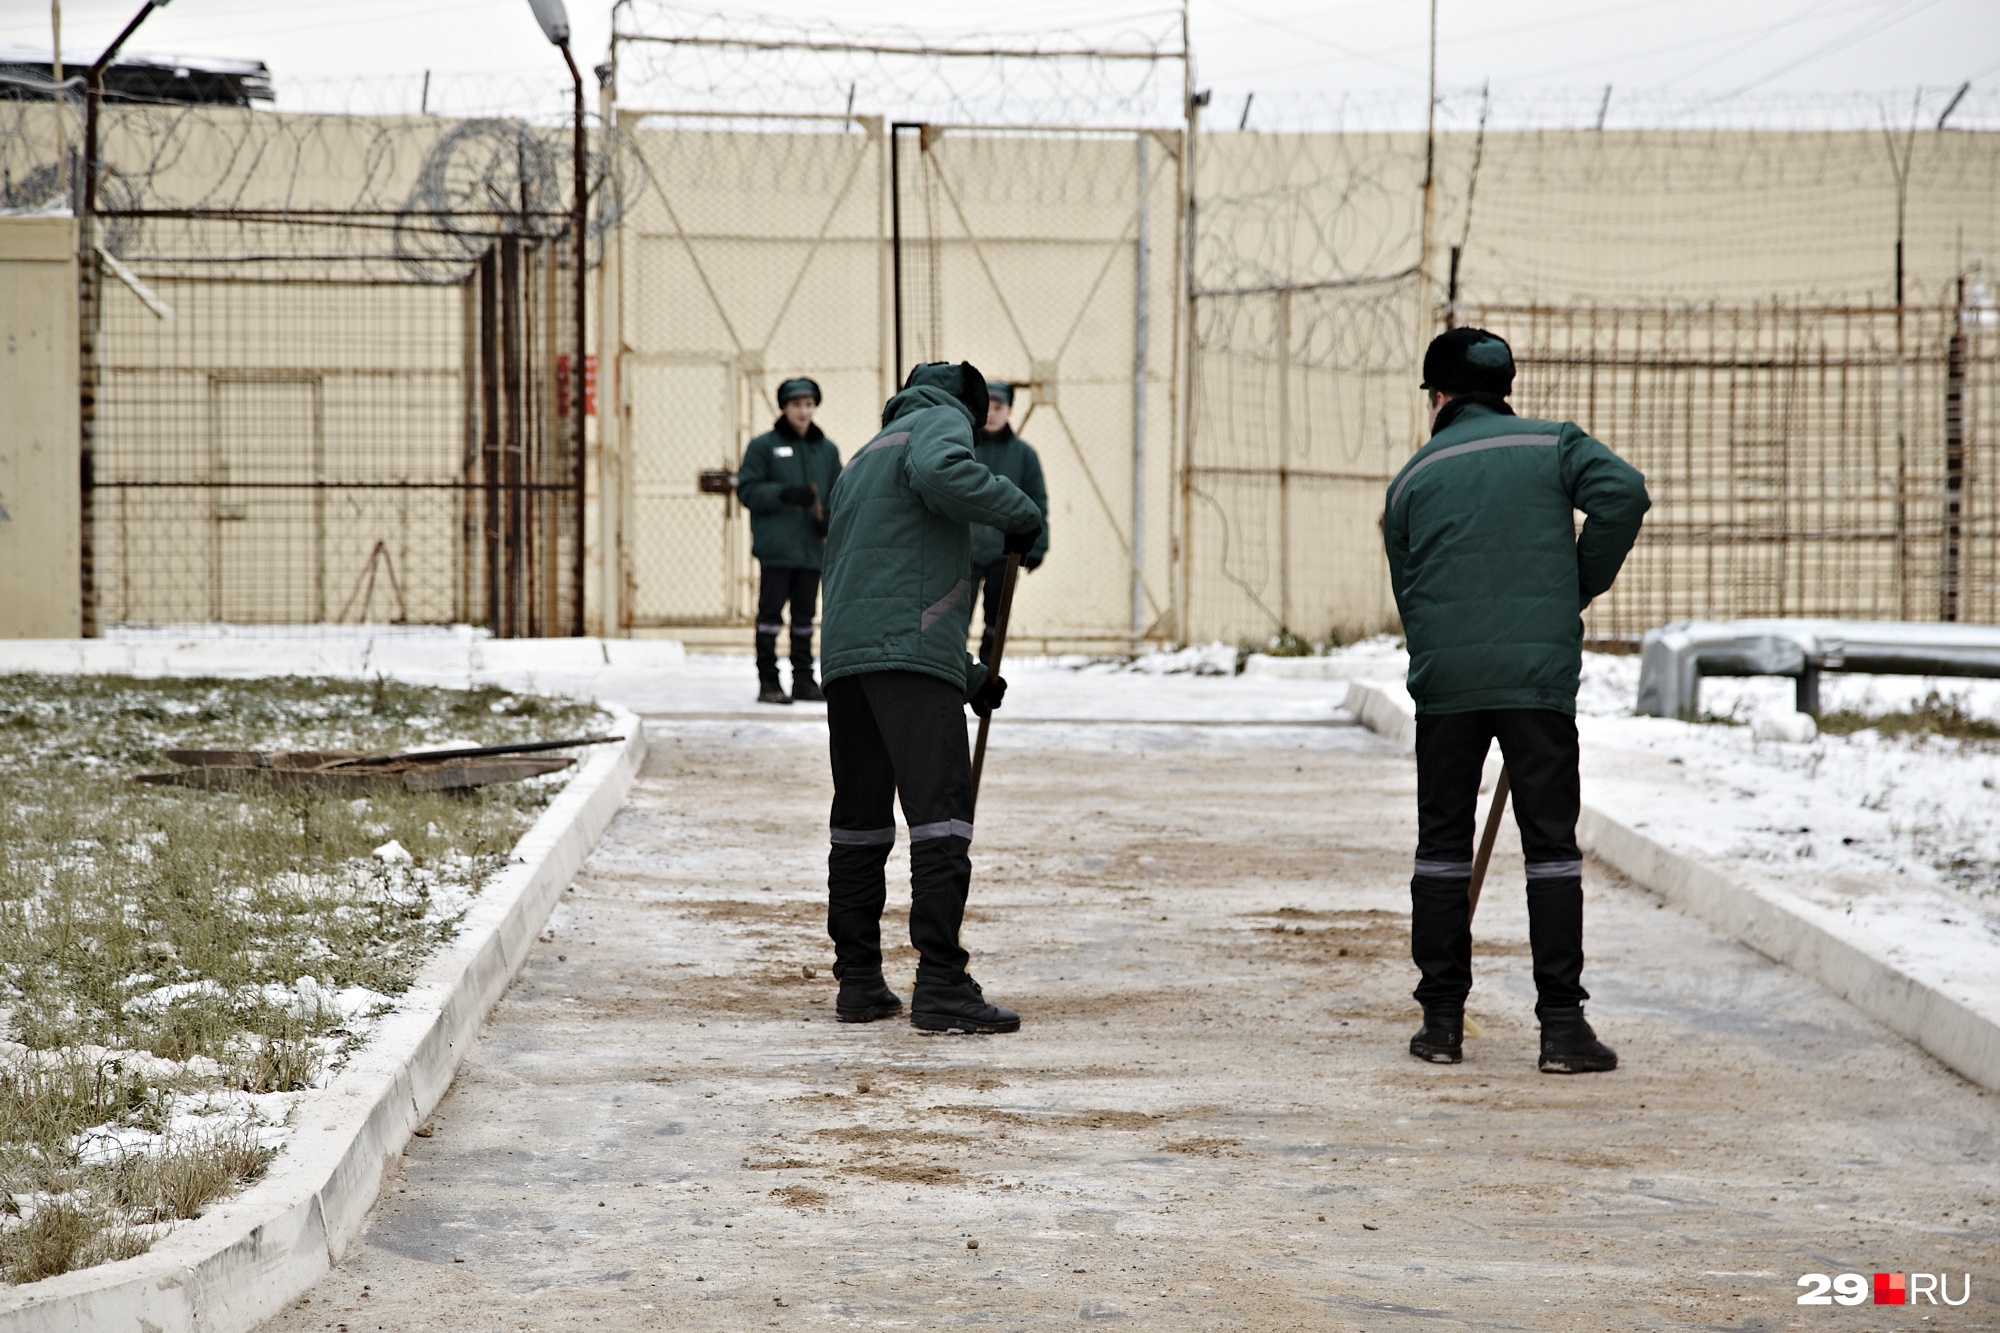 Осужденный отбывает исправительные работы. Тюрьма Плесецкий район ИК-21. Труд осужденных. Адаптация осужденных. Работа осужденных.